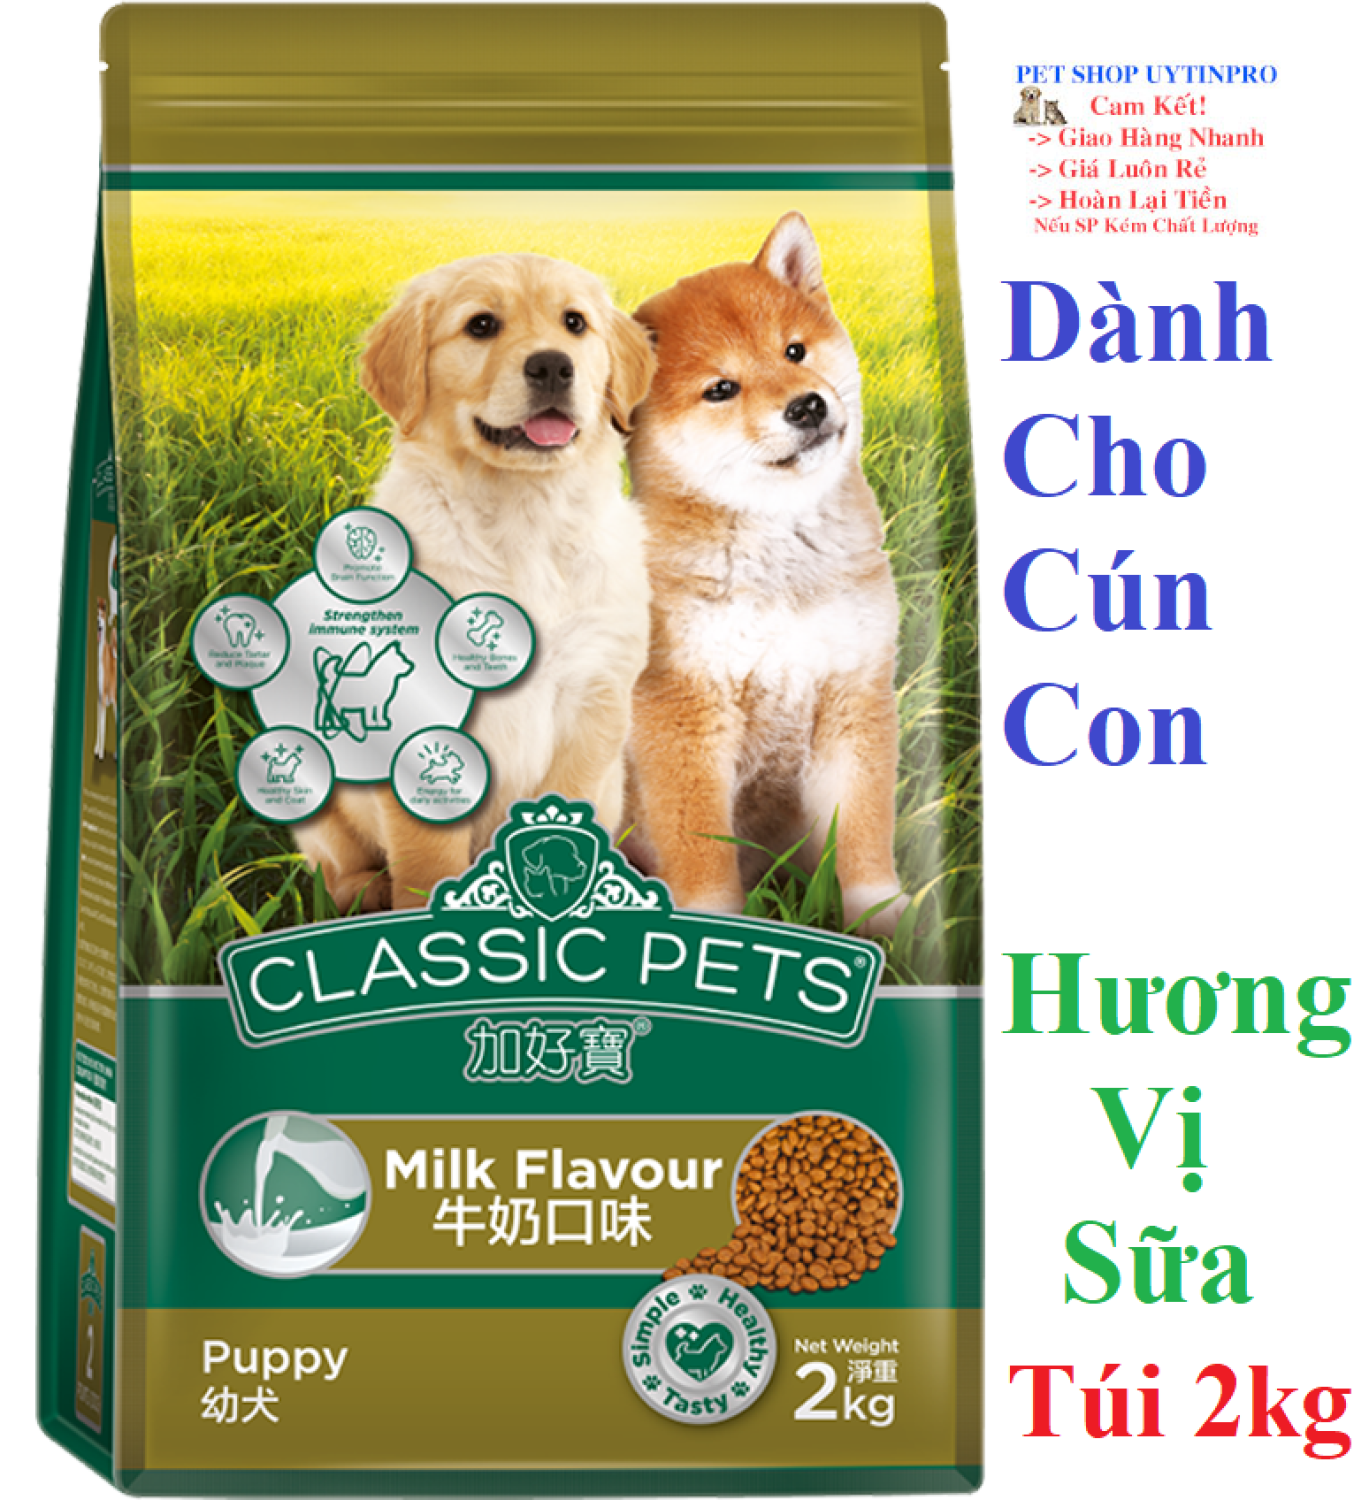 THỨC ĂN DẠNG HẠT CHO CHÓ CON Classic Pets Puppy Dog Hương vị Sữa Túi 2kg Xuất xứ Thái Lan - Pet shop 24